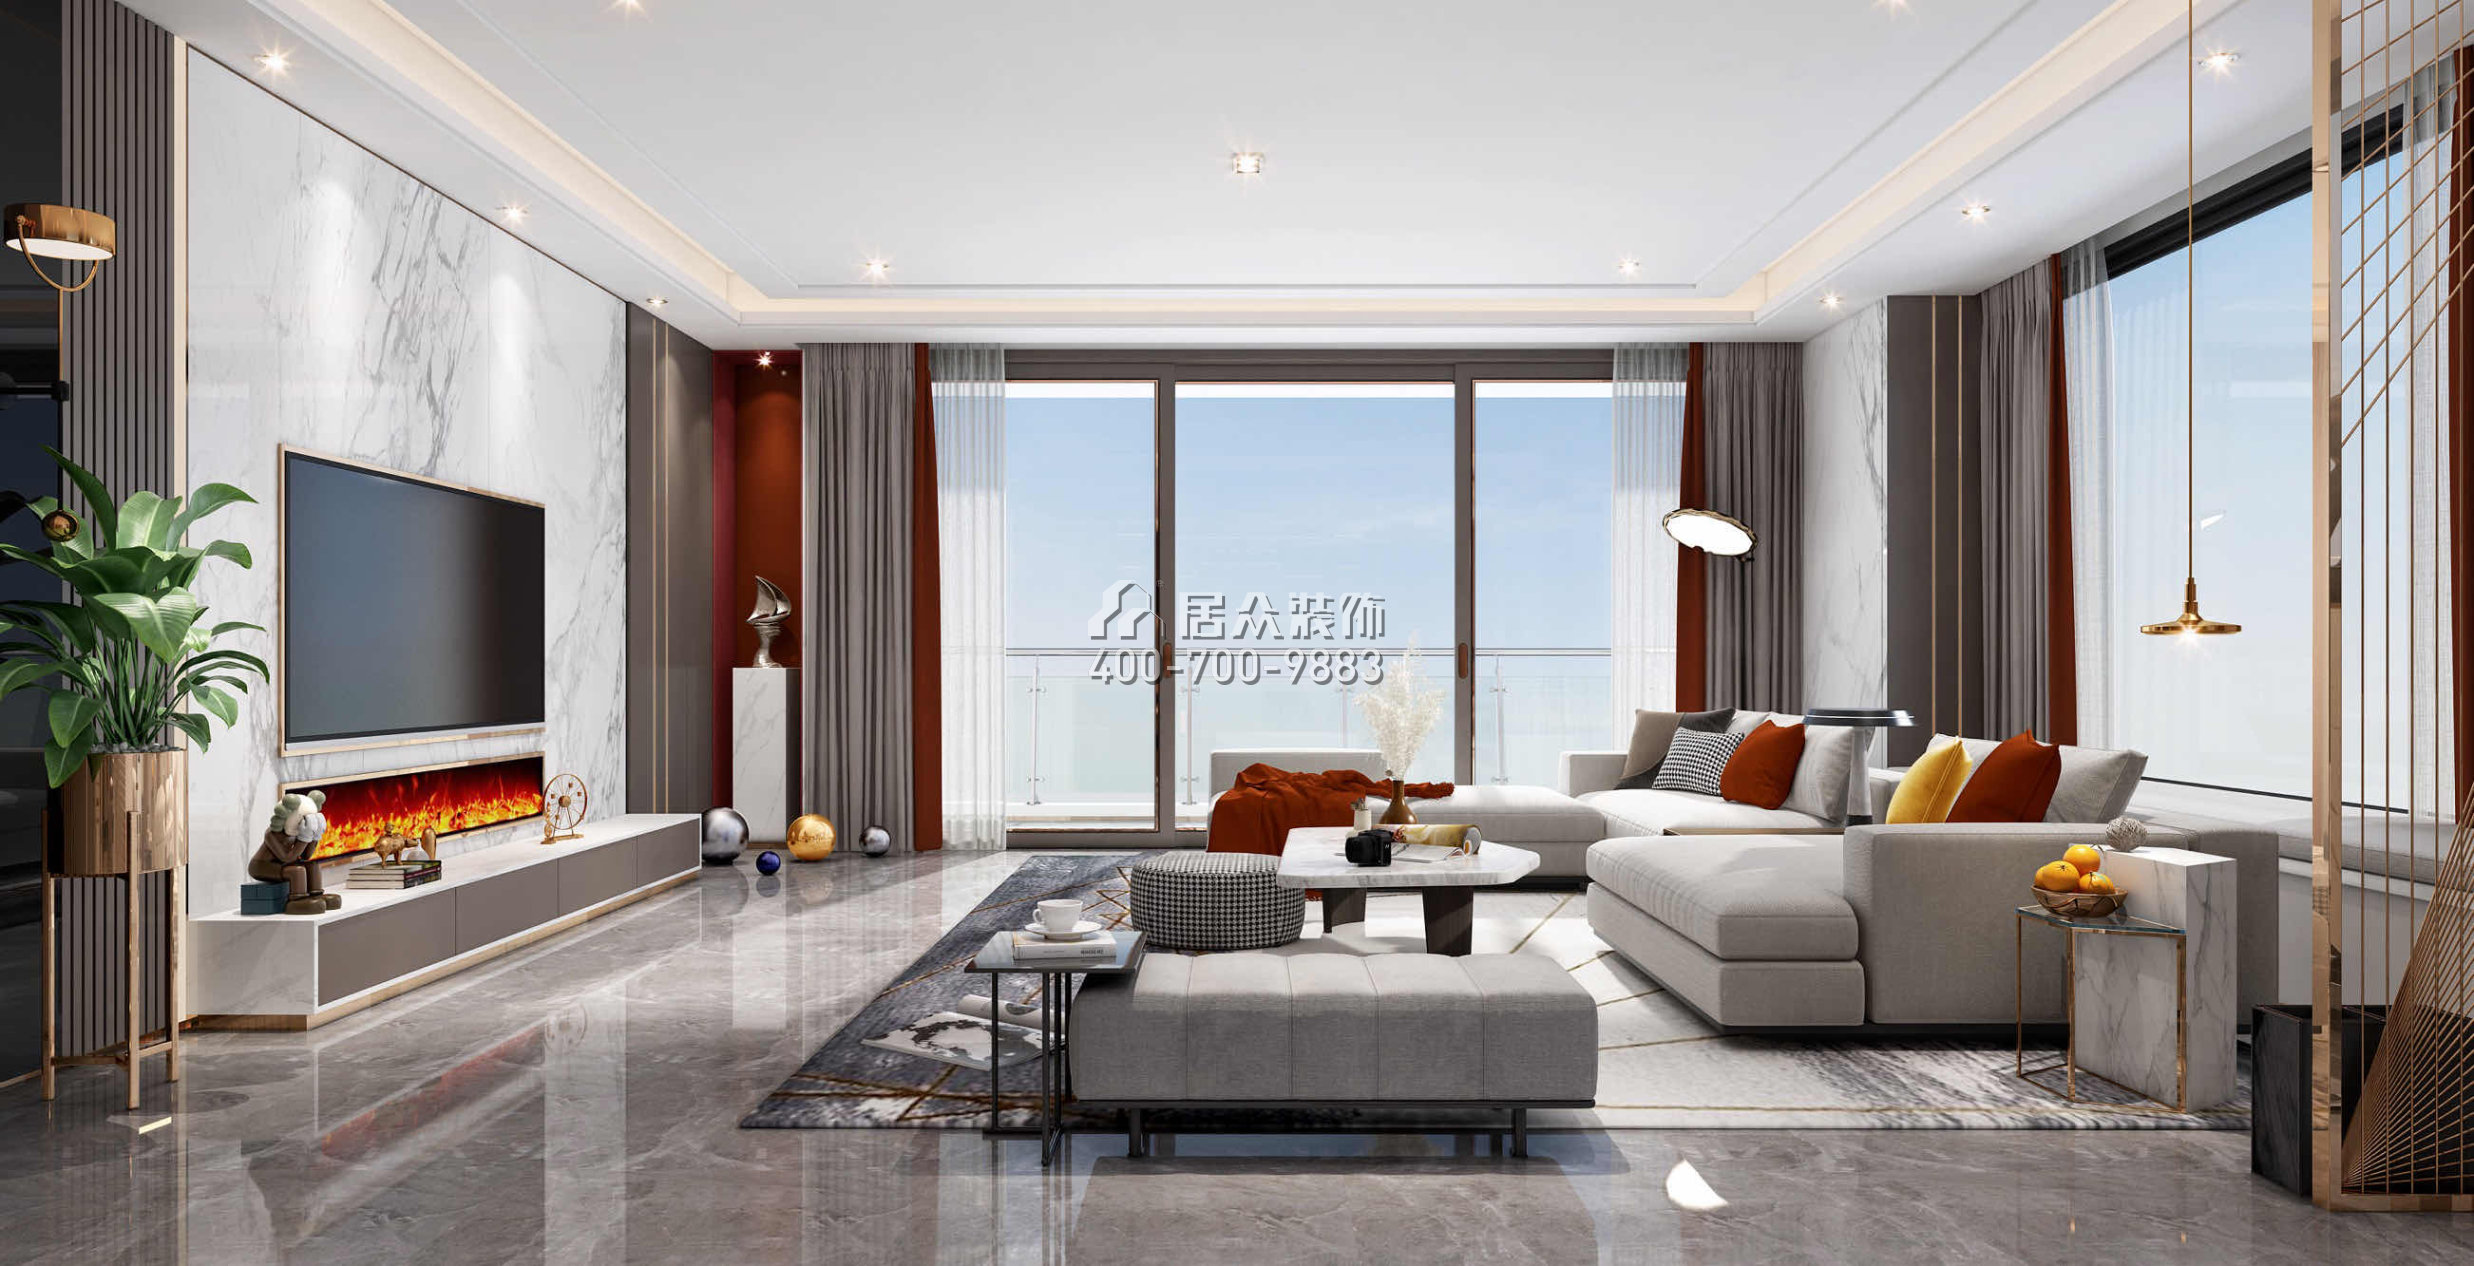 天鵝堡370平方米現代簡約風格平層戶型客廳裝修效果圖